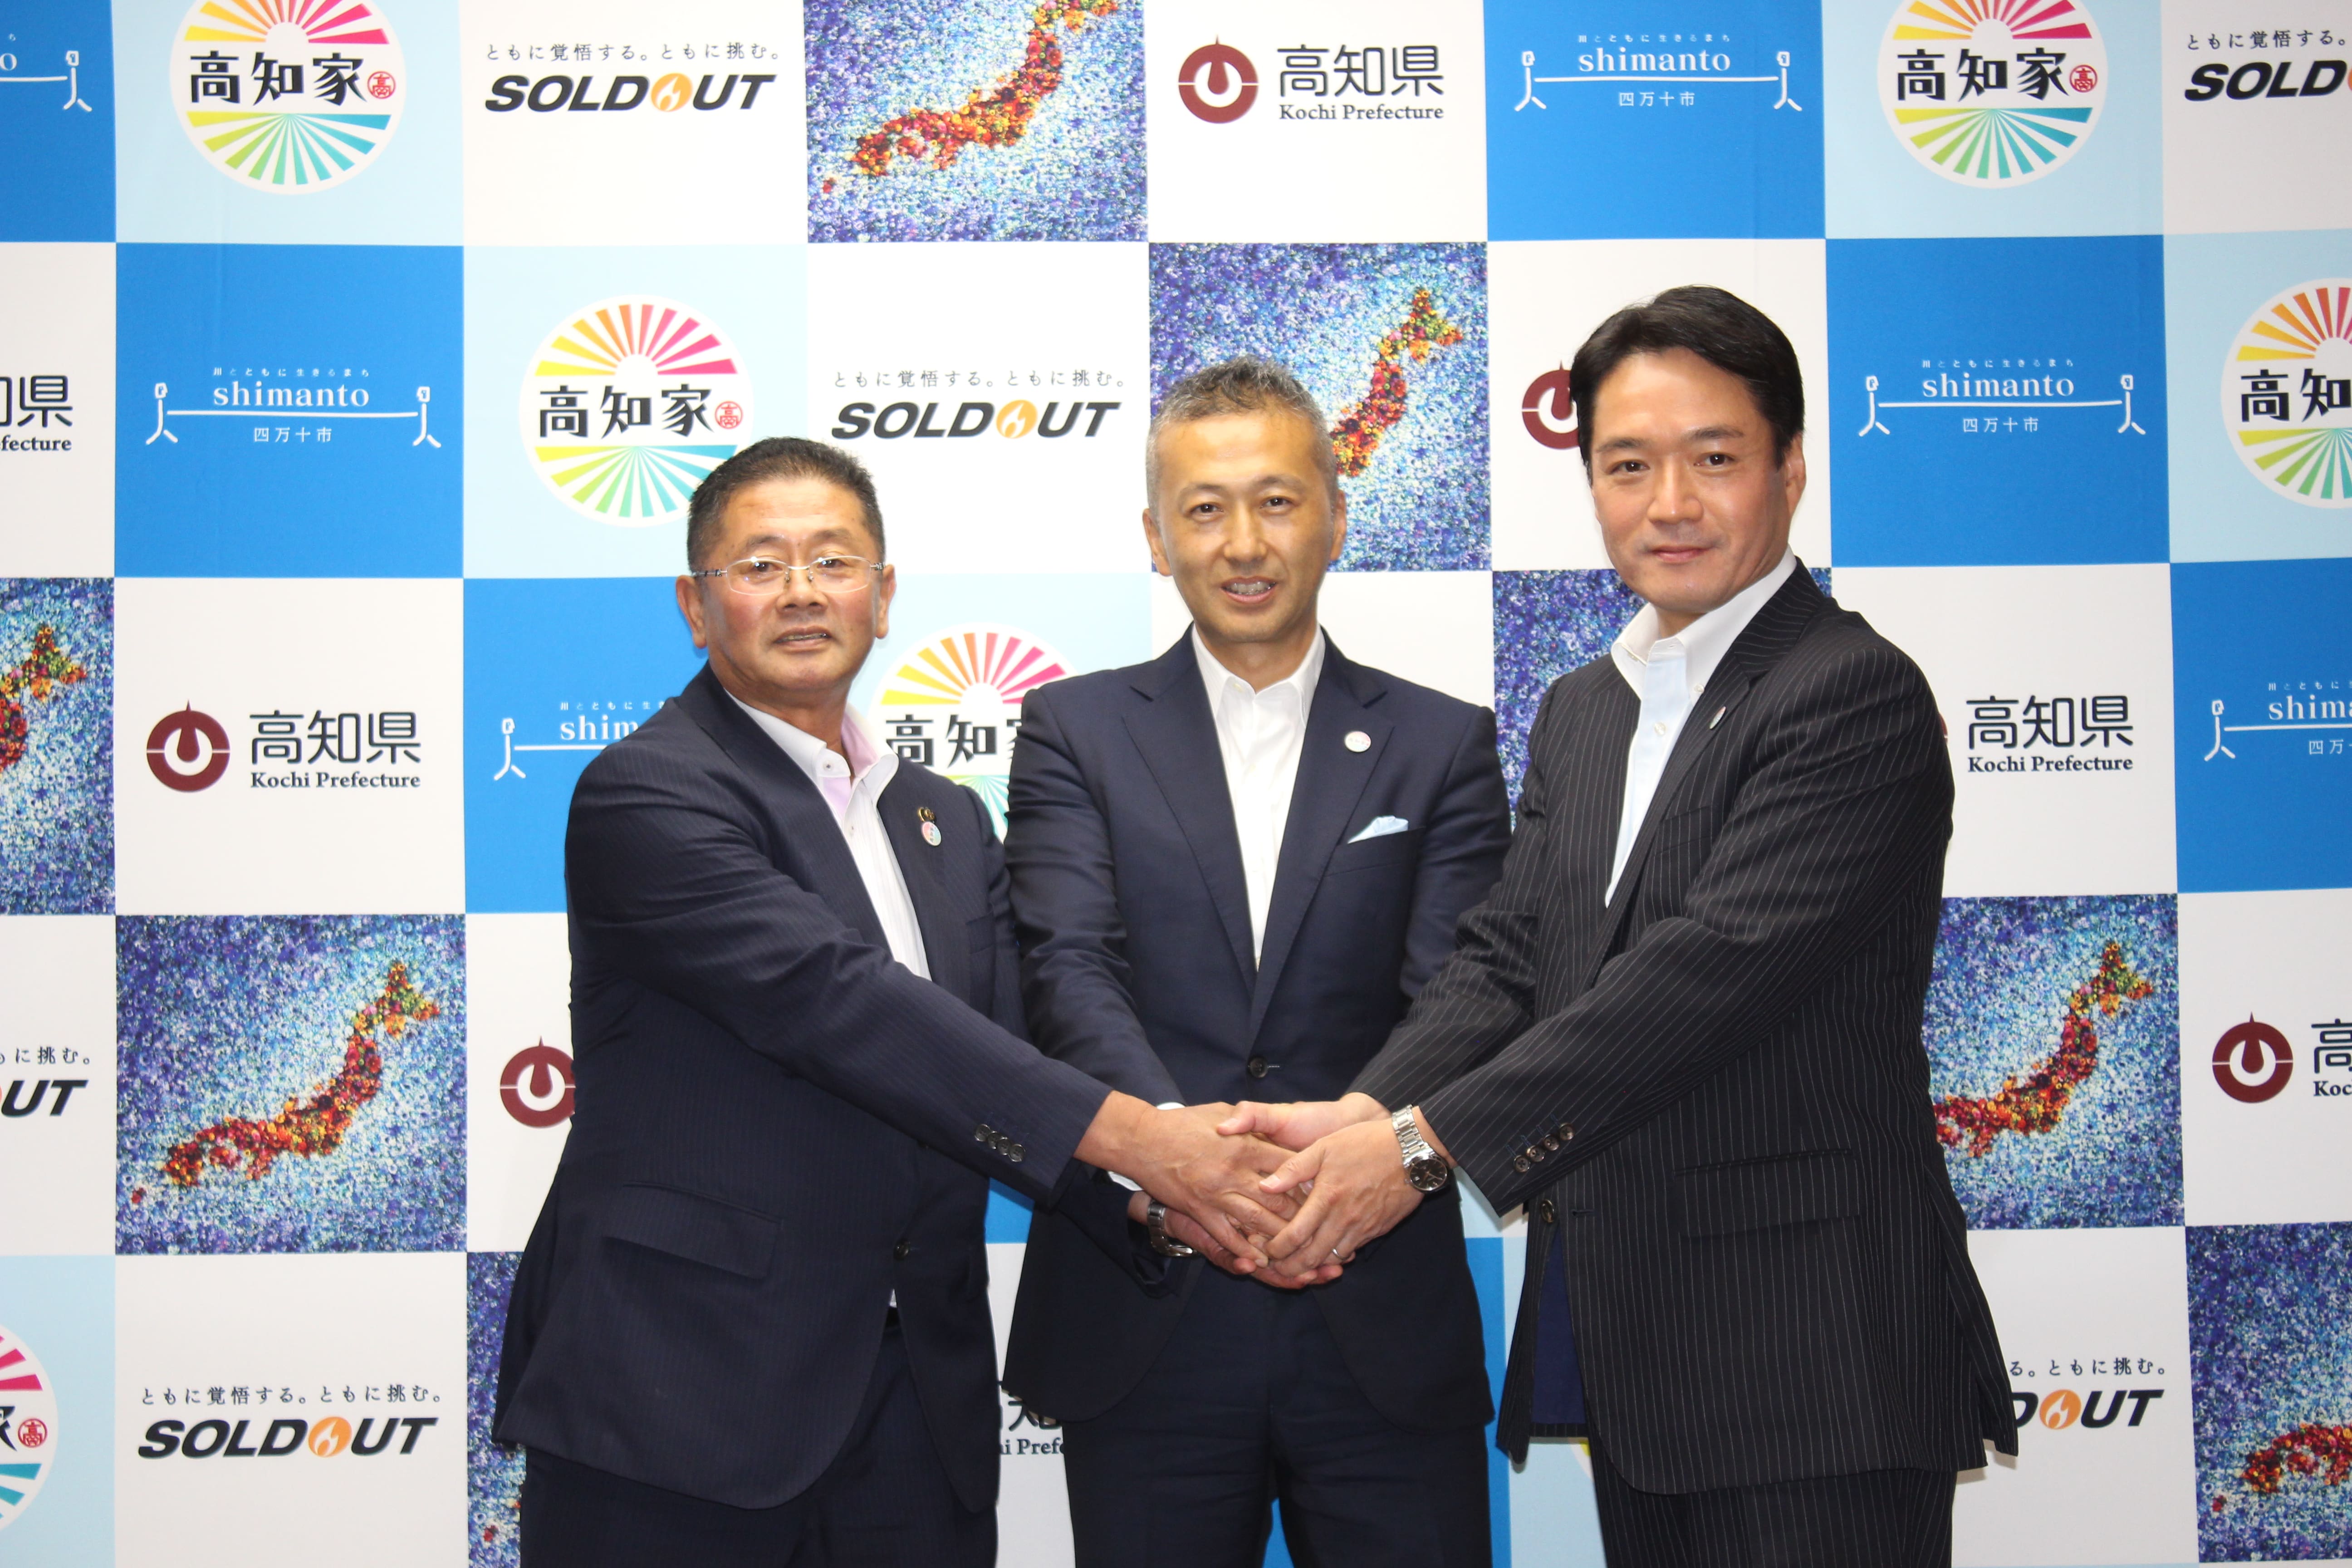 高知県四万十市に デジタルオペレーションセンター四万十 を設立 ソウルドアウト株式会社のプレスリリース